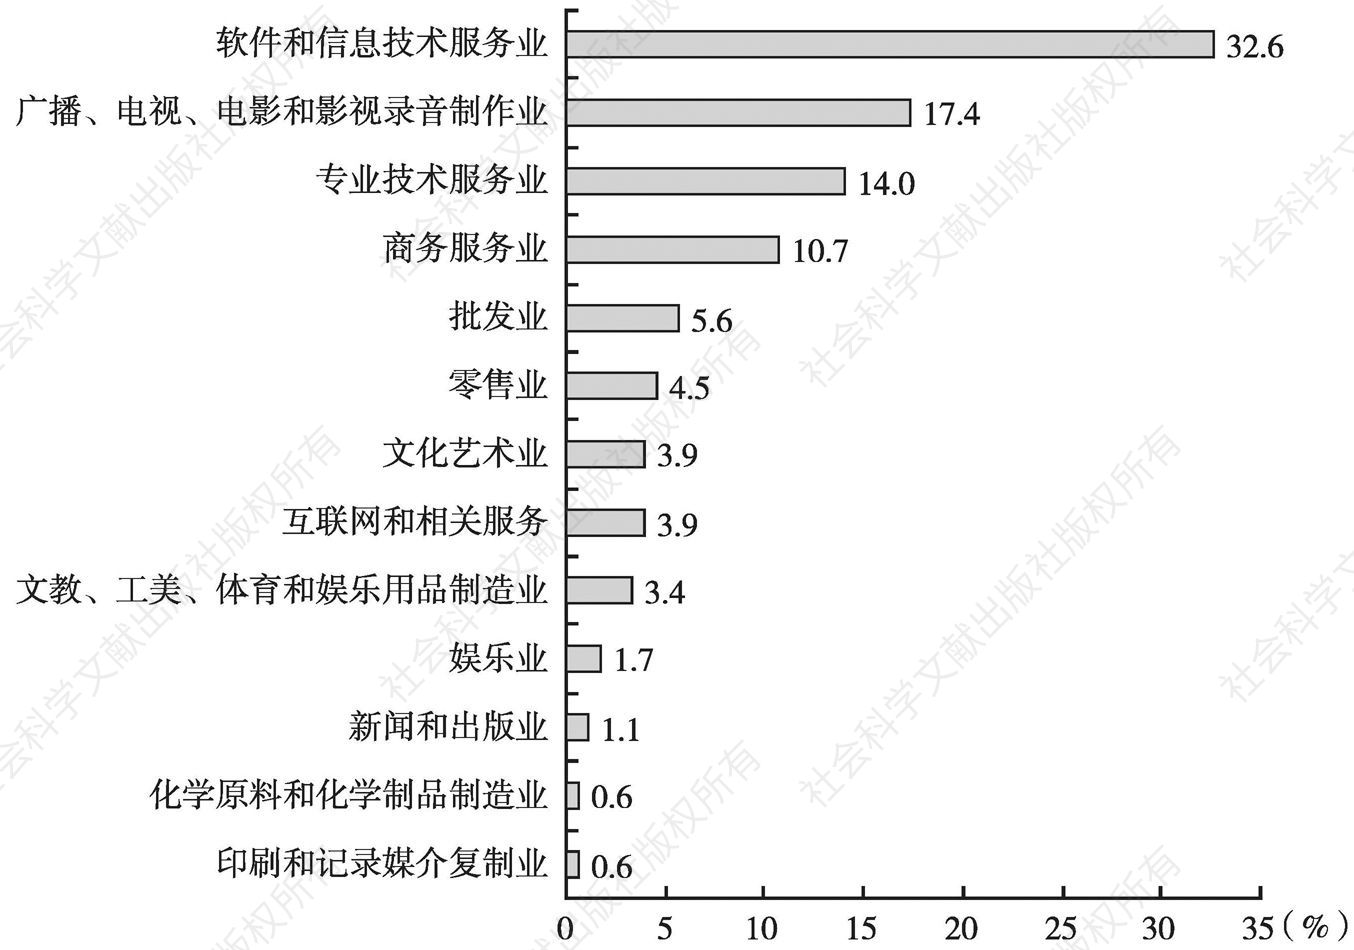 图1 2013年广州市动漫重点企业所属行业